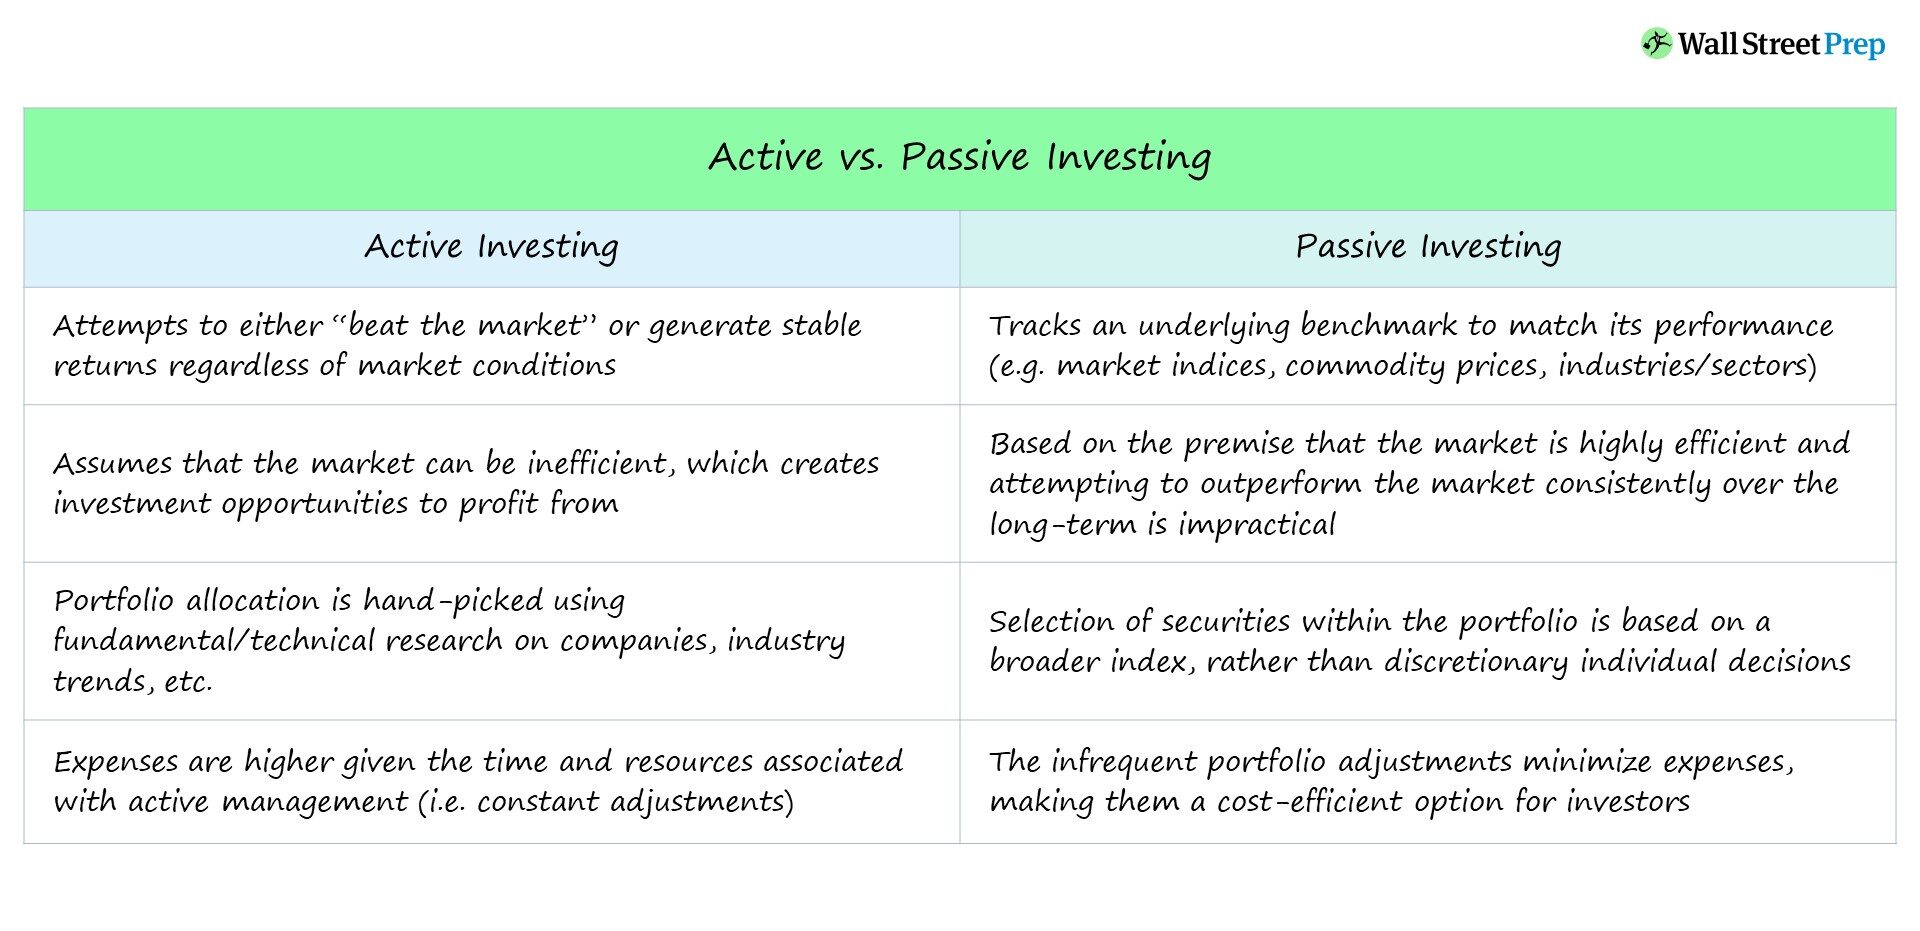 Inversión activa versus pasiva | Definición + Principales diferencias